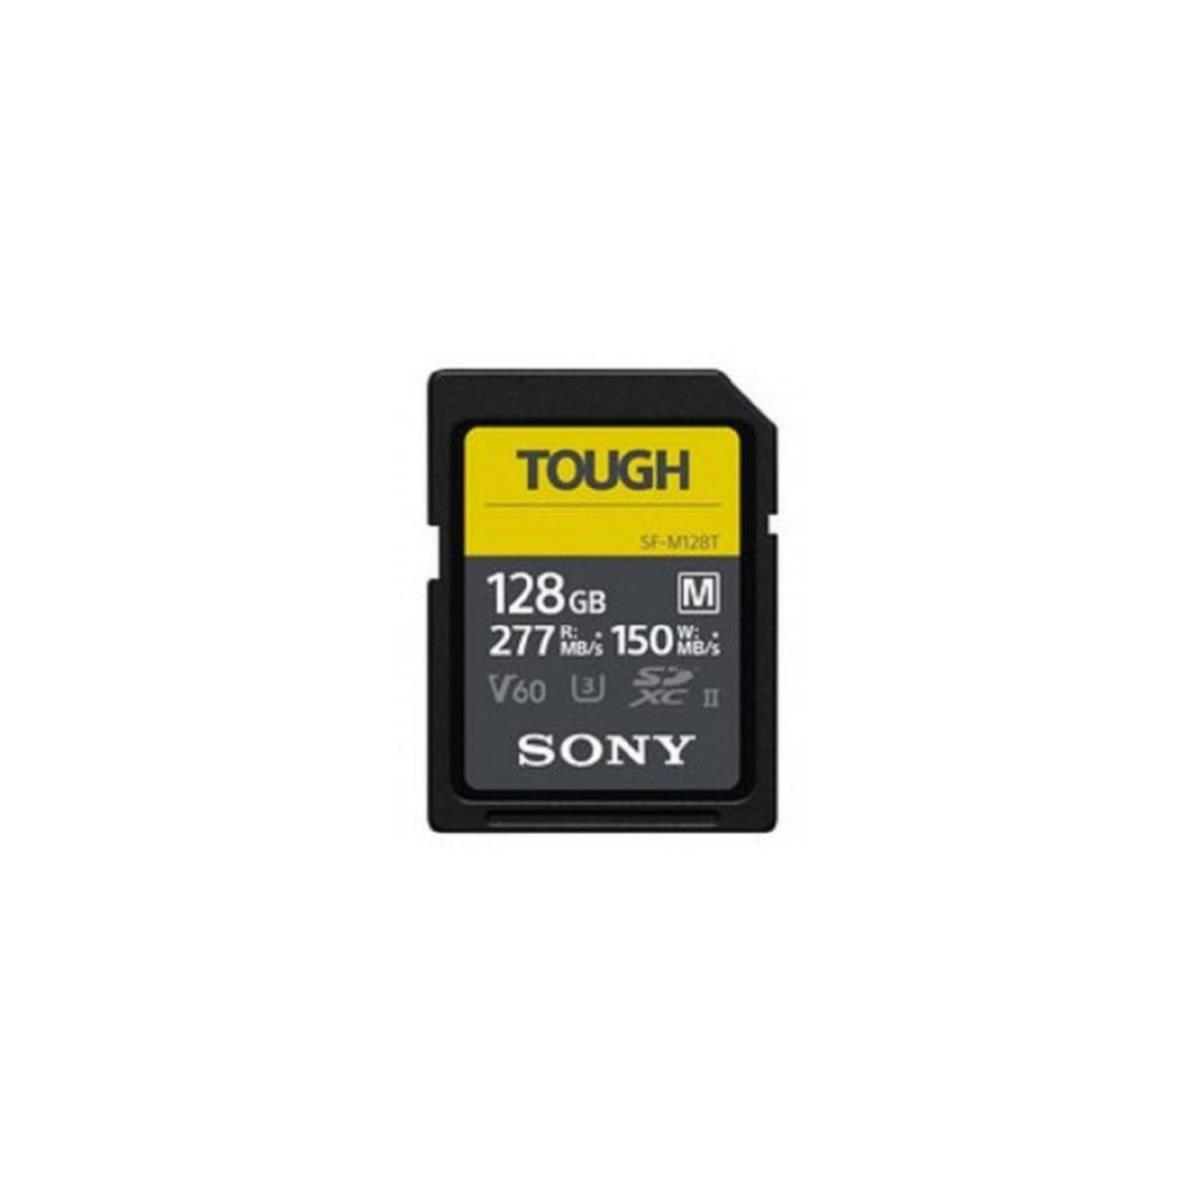 Sony 128GB SF-M Series Tough UHS-II SDXC Memory Card #SFM128T/T1